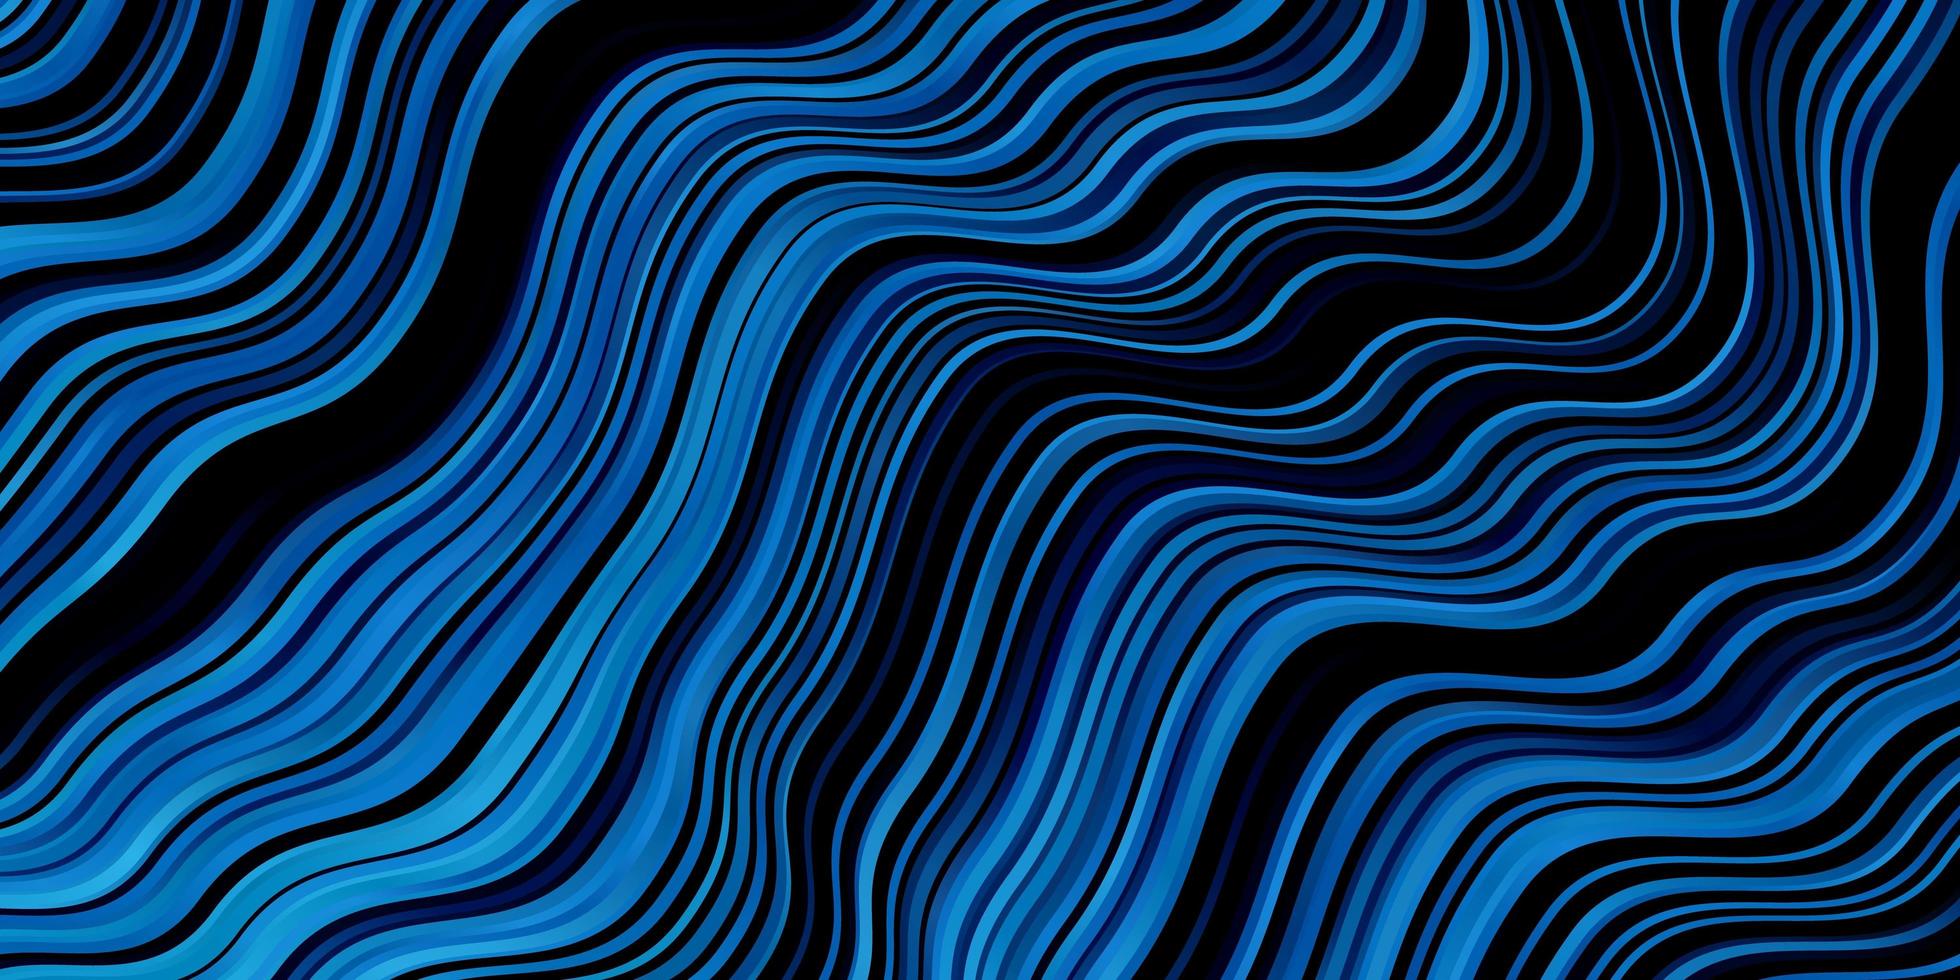 layout de vetor de azul escuro com linhas irônicas.